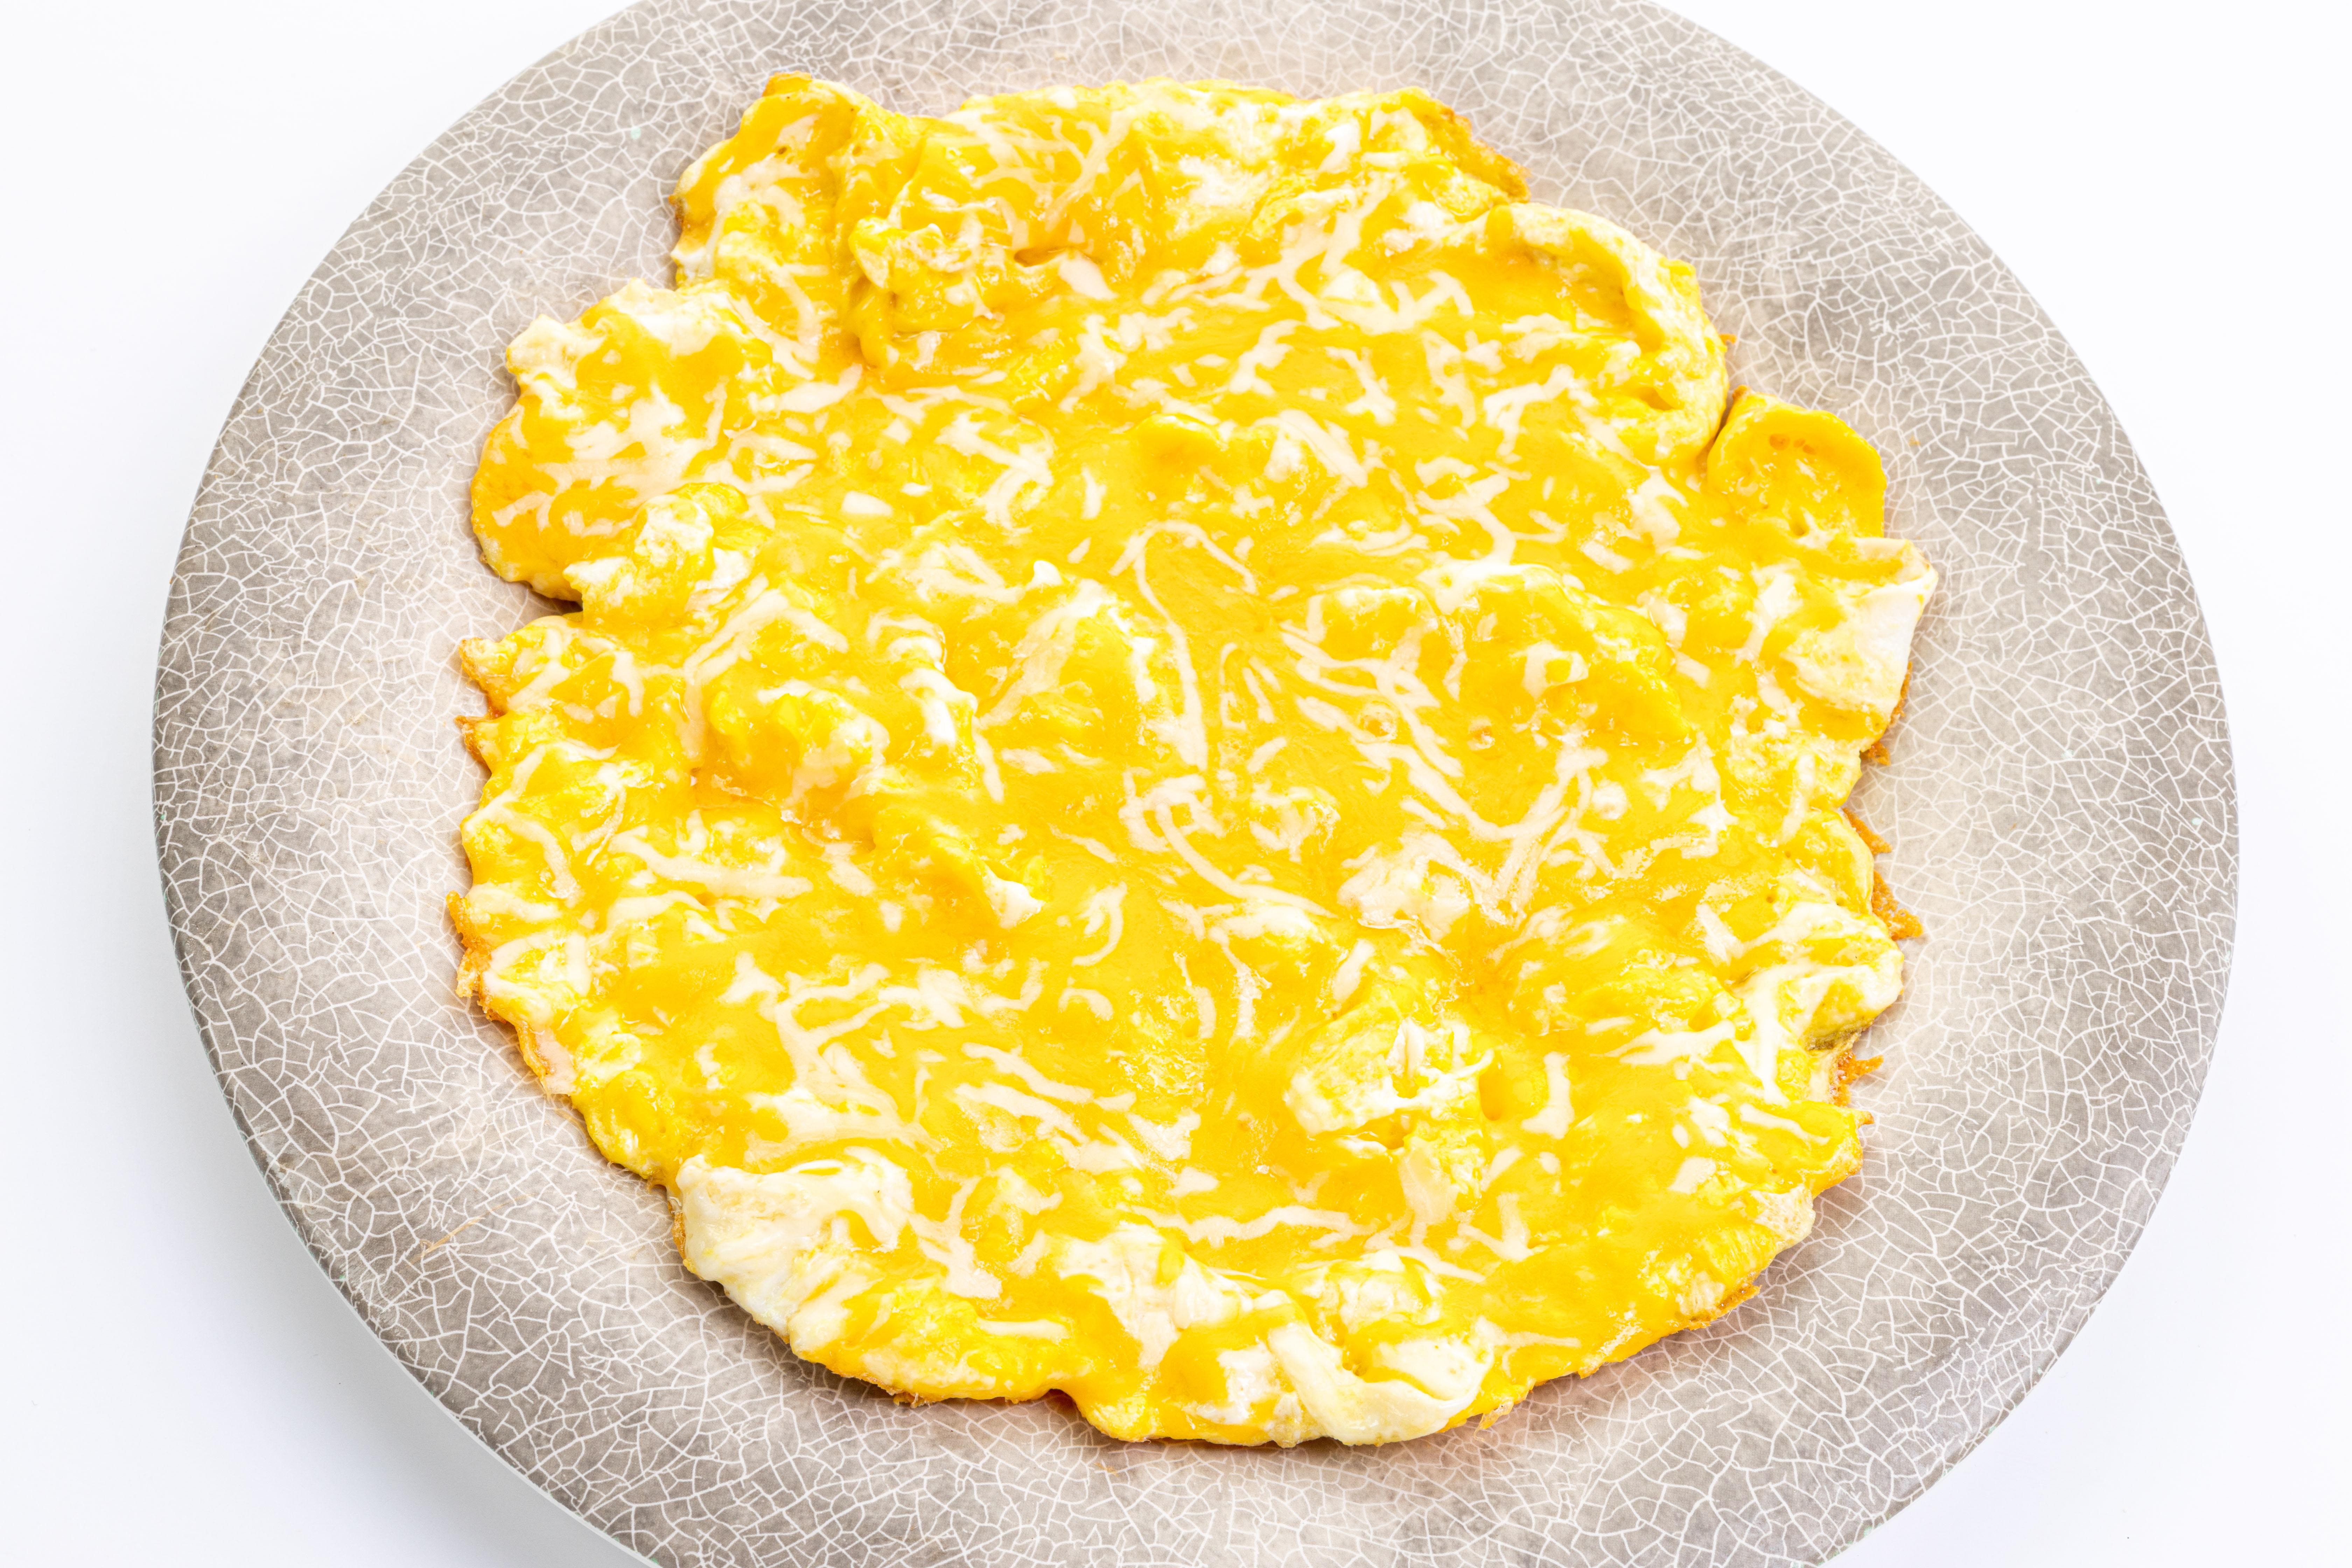 Eggs w/ Cheese